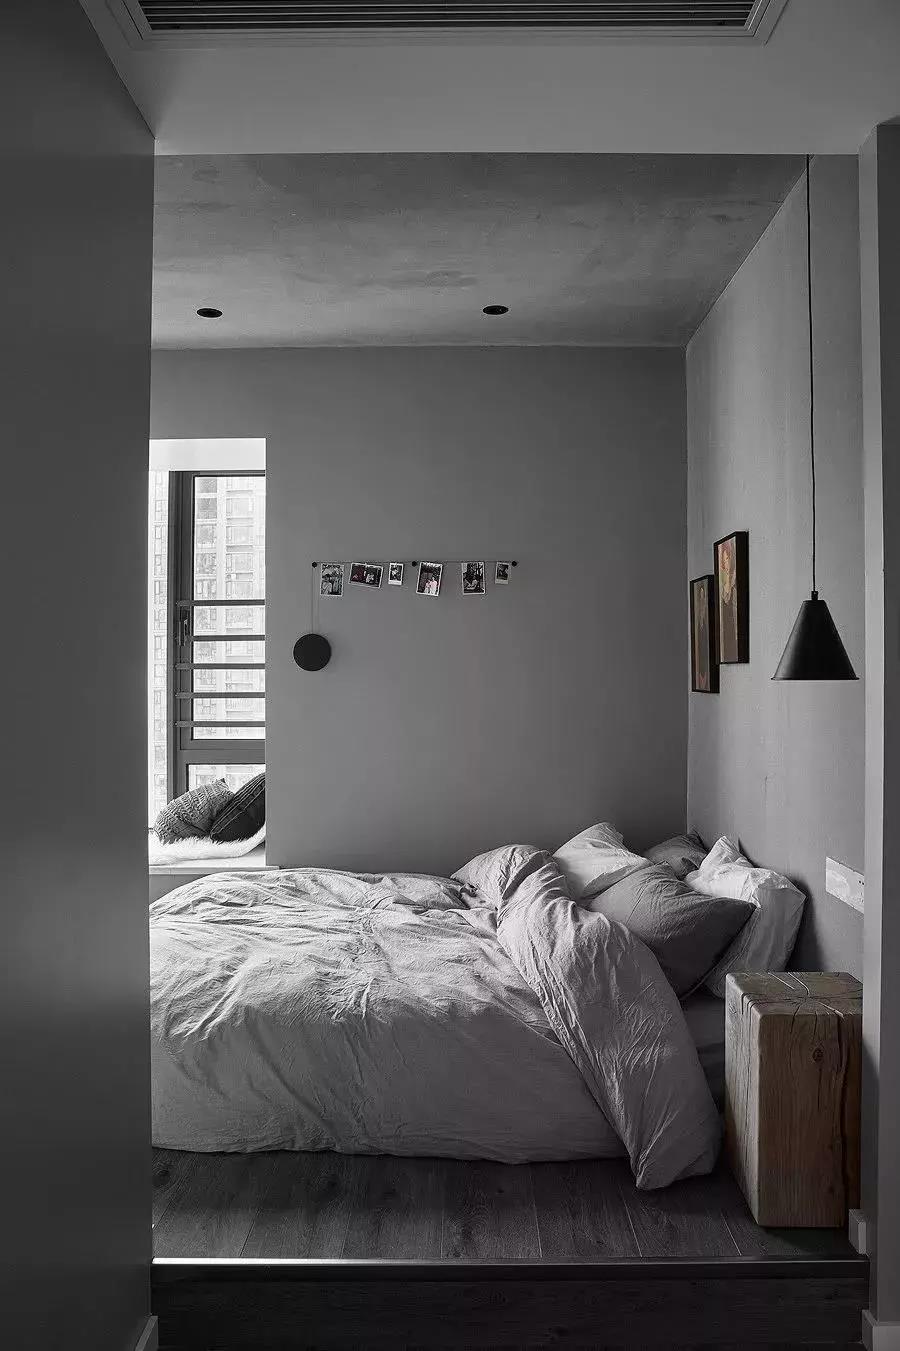 卧室也是用全屋的灰色系,营造简约又大方的睡眠环境,床品是浅灰色搭配